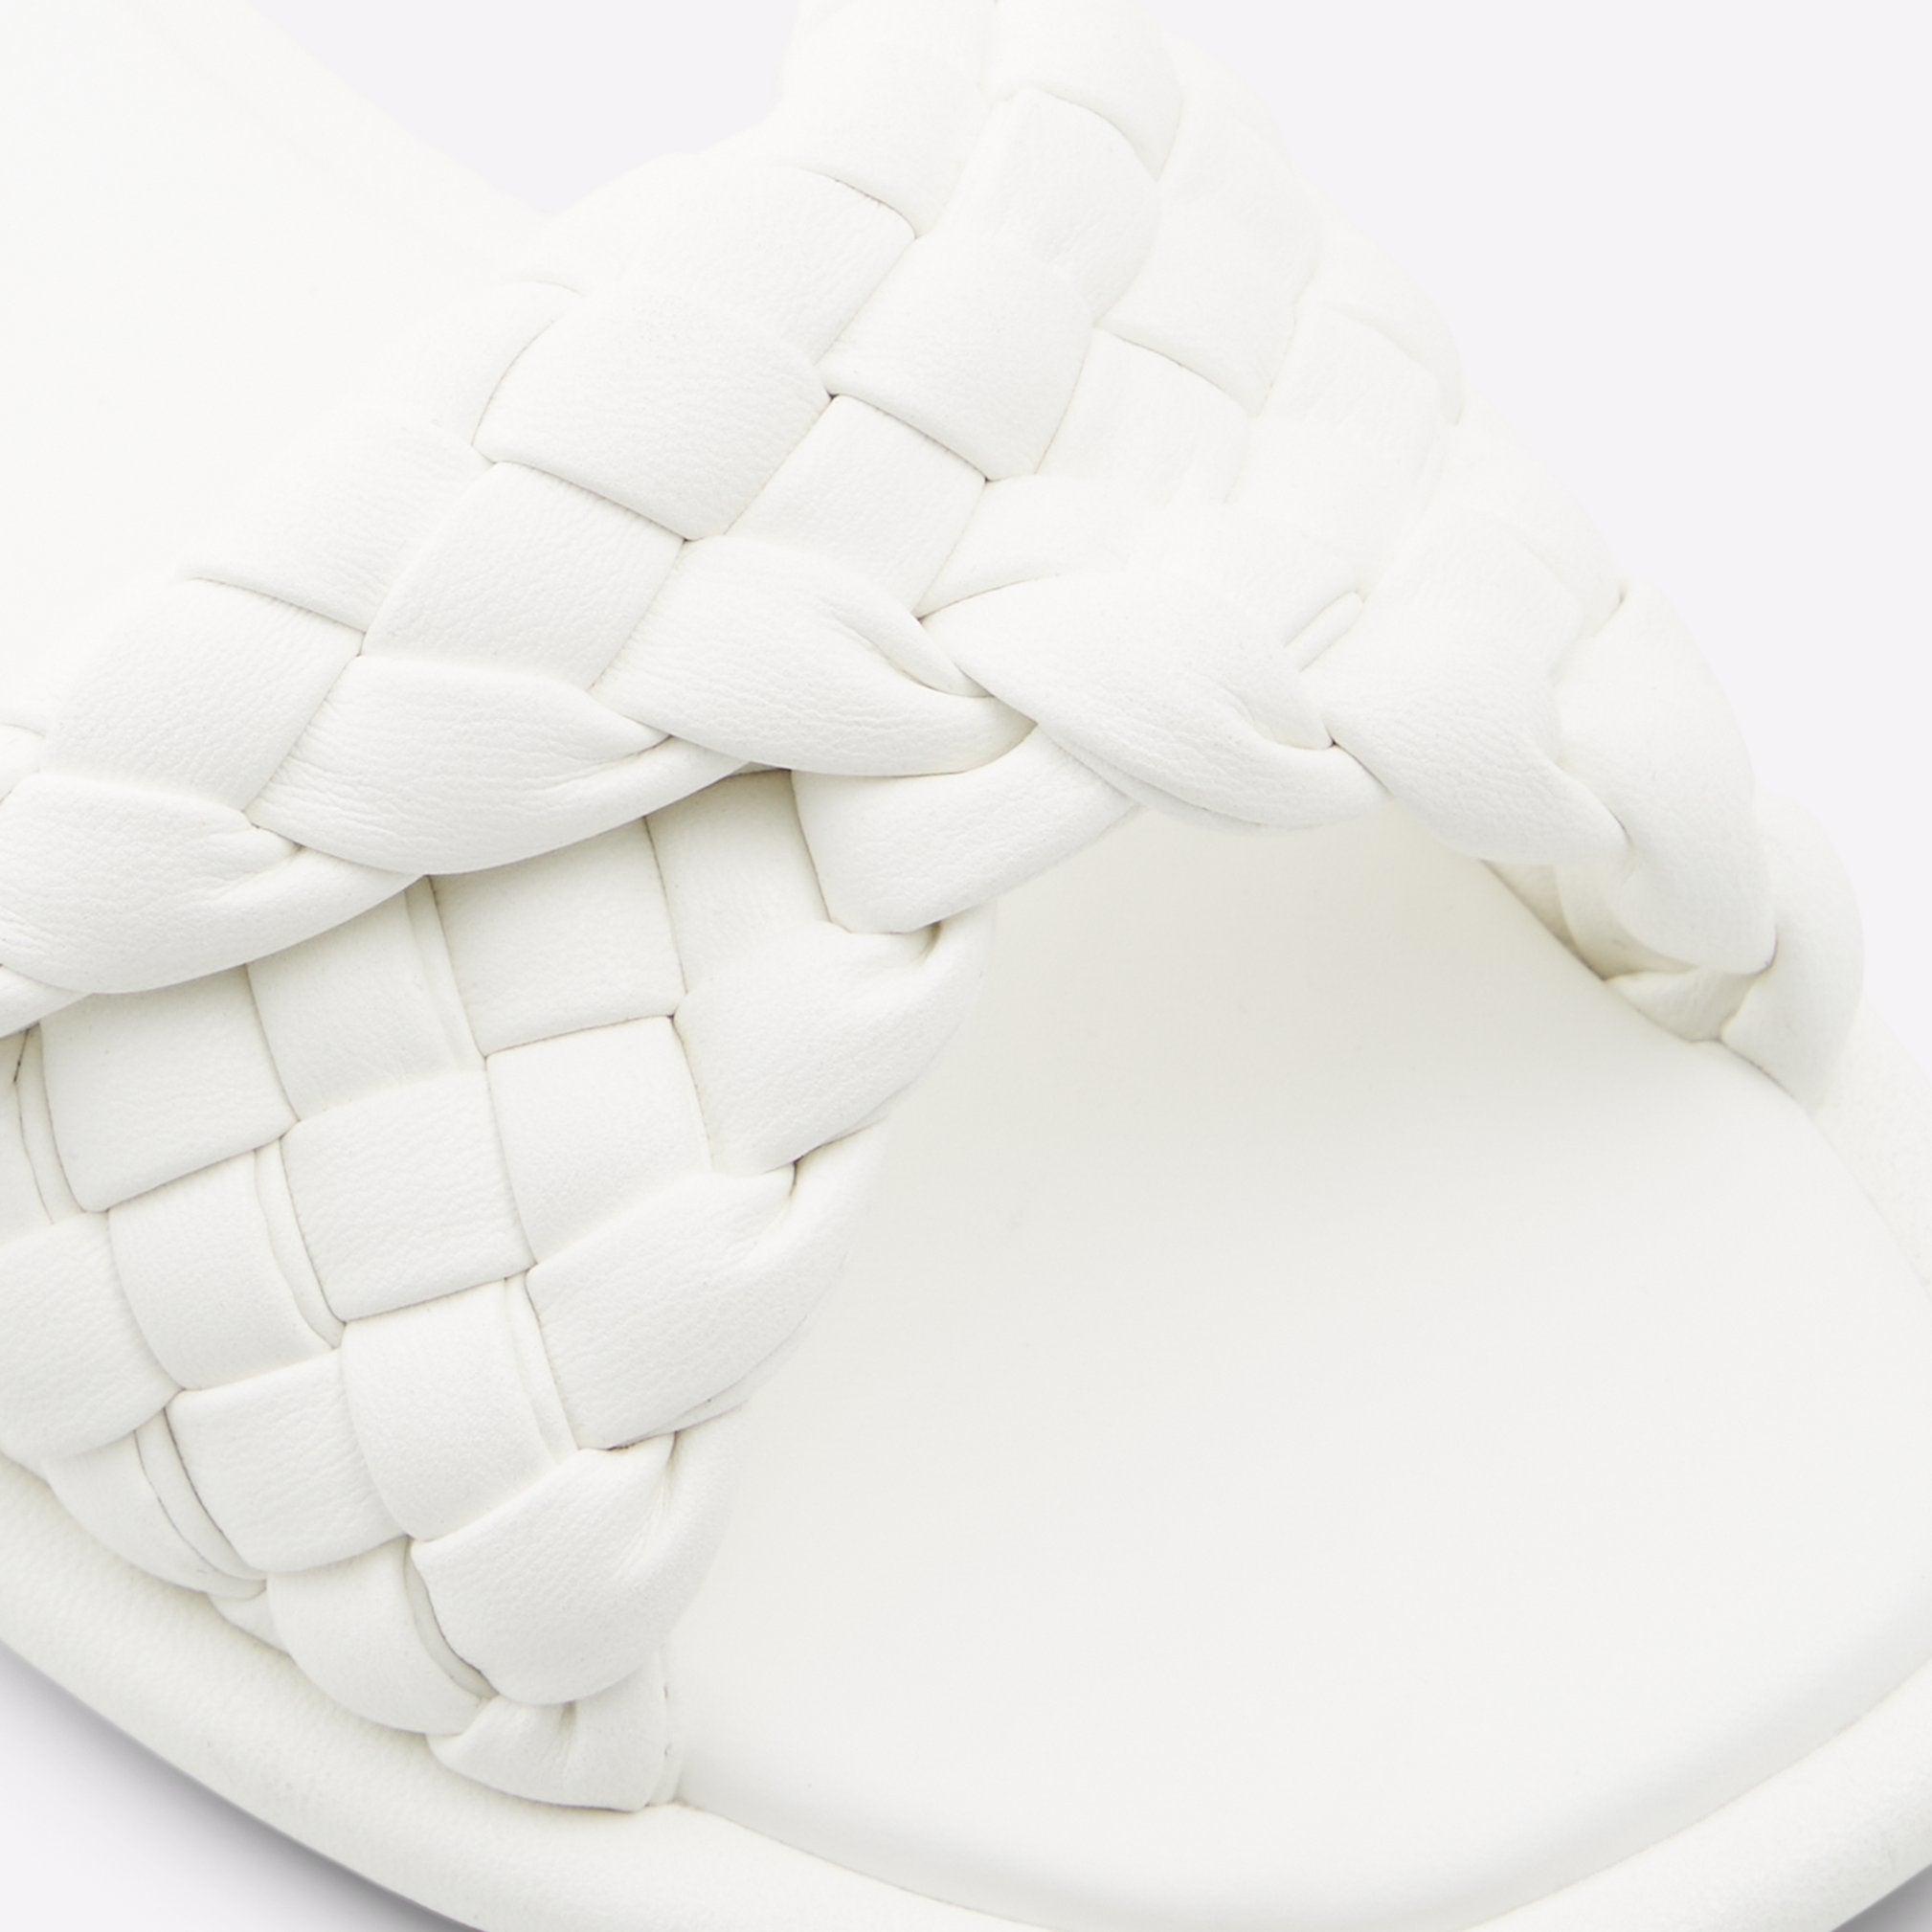 Chicago Women Shoes - White - ALDO KSA